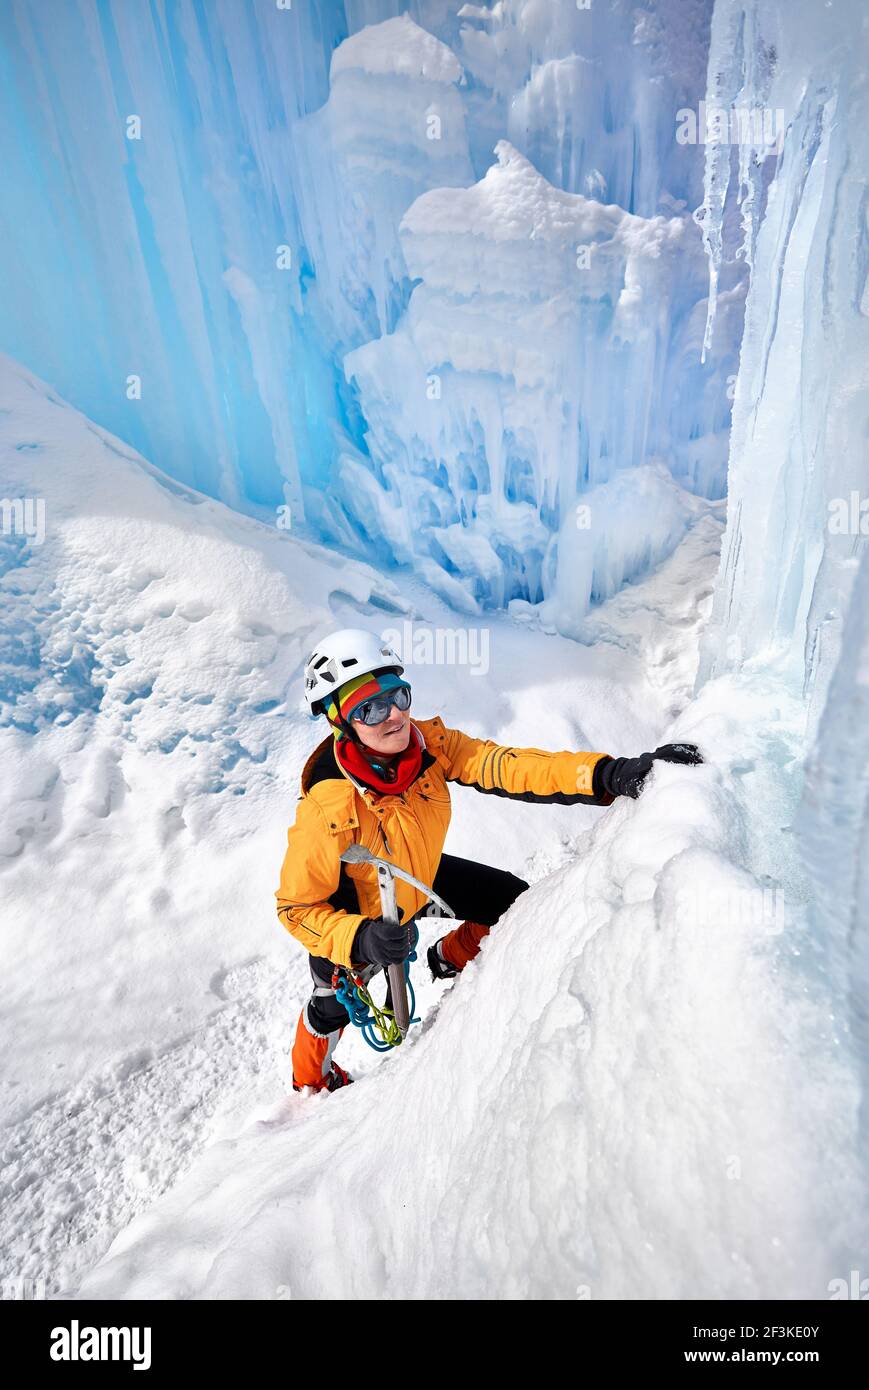 ghiaccio, avventura, arrampicata, scalatore, neve, salita, alpinismo, alta, sport, sfida, freddo, inverno, montagna, estremo, escursionismo, attivo, ricreazione, o Foto Stock